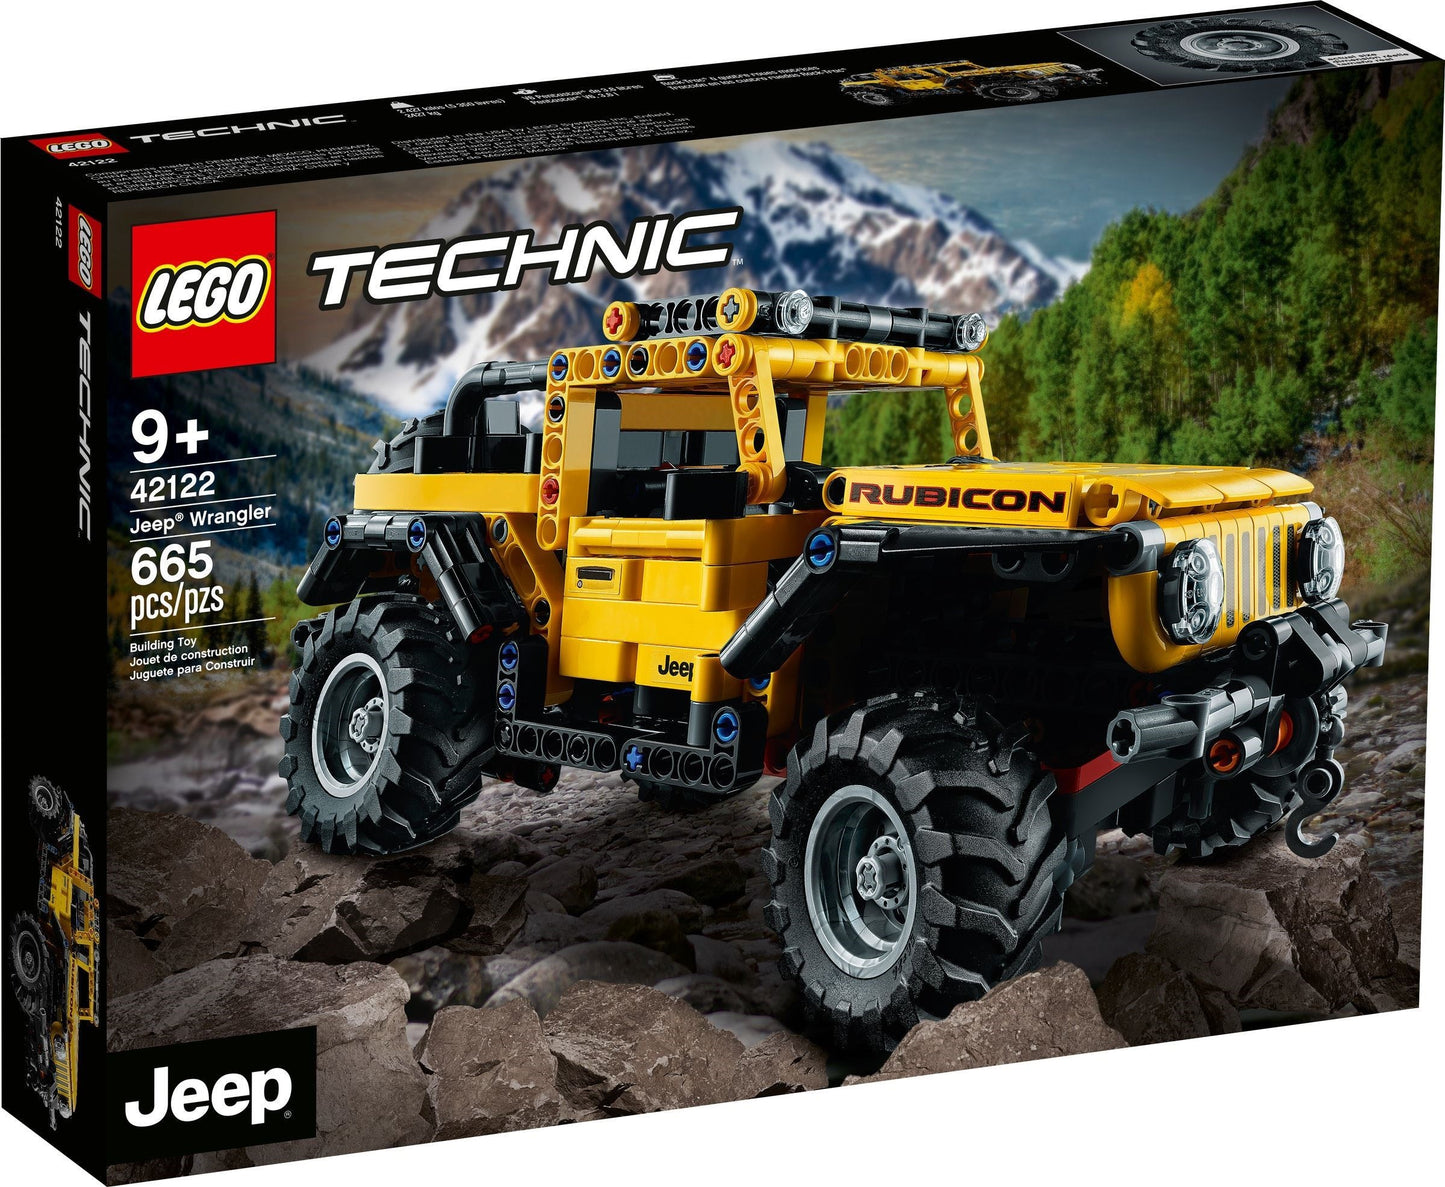 42122 - Technic - Jeep Wrangler